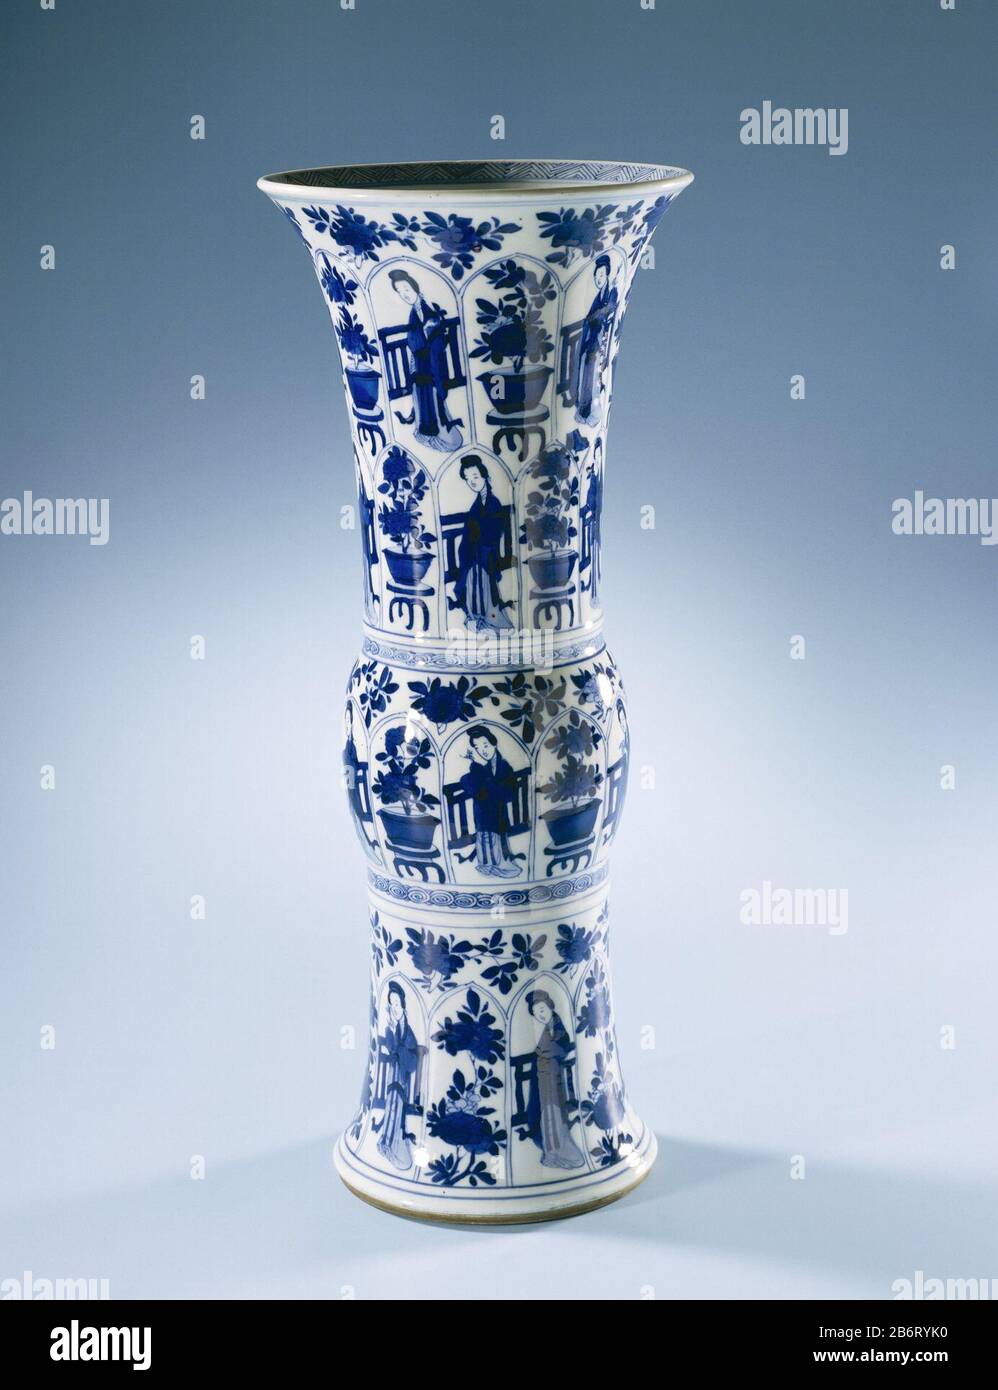 Gu-vormige bekervaas met Chinese dames en bloempotten in vakken Gu-vormige vaas van porselein met een ronde verdikking in het midden en een hals, beschilderd in onderglazuur blauw. de wand afwisselend